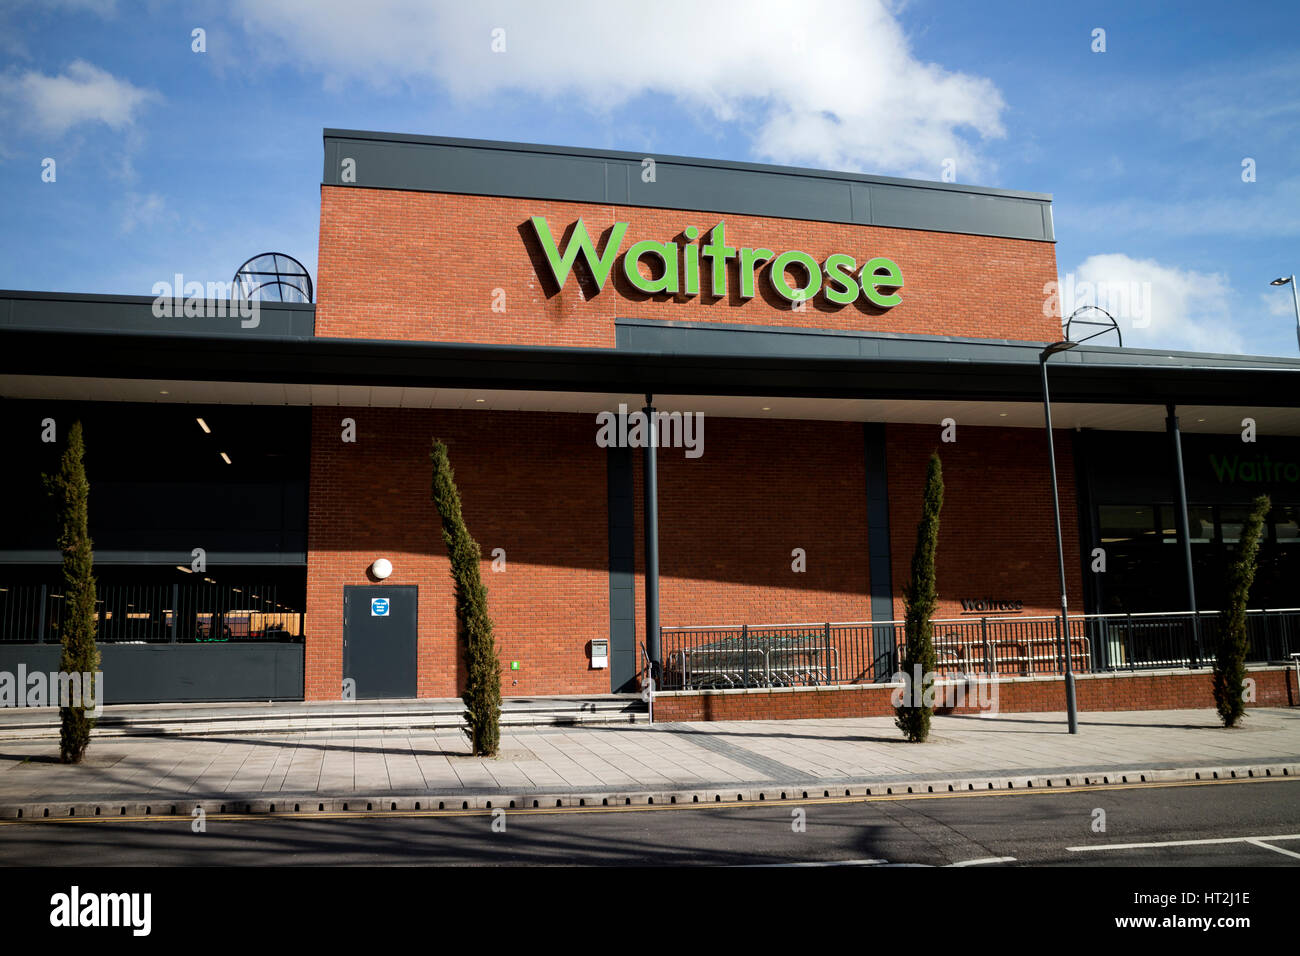 The new Waitrose supermarket, Solihull, West Midlands, England, UK Stock Photo